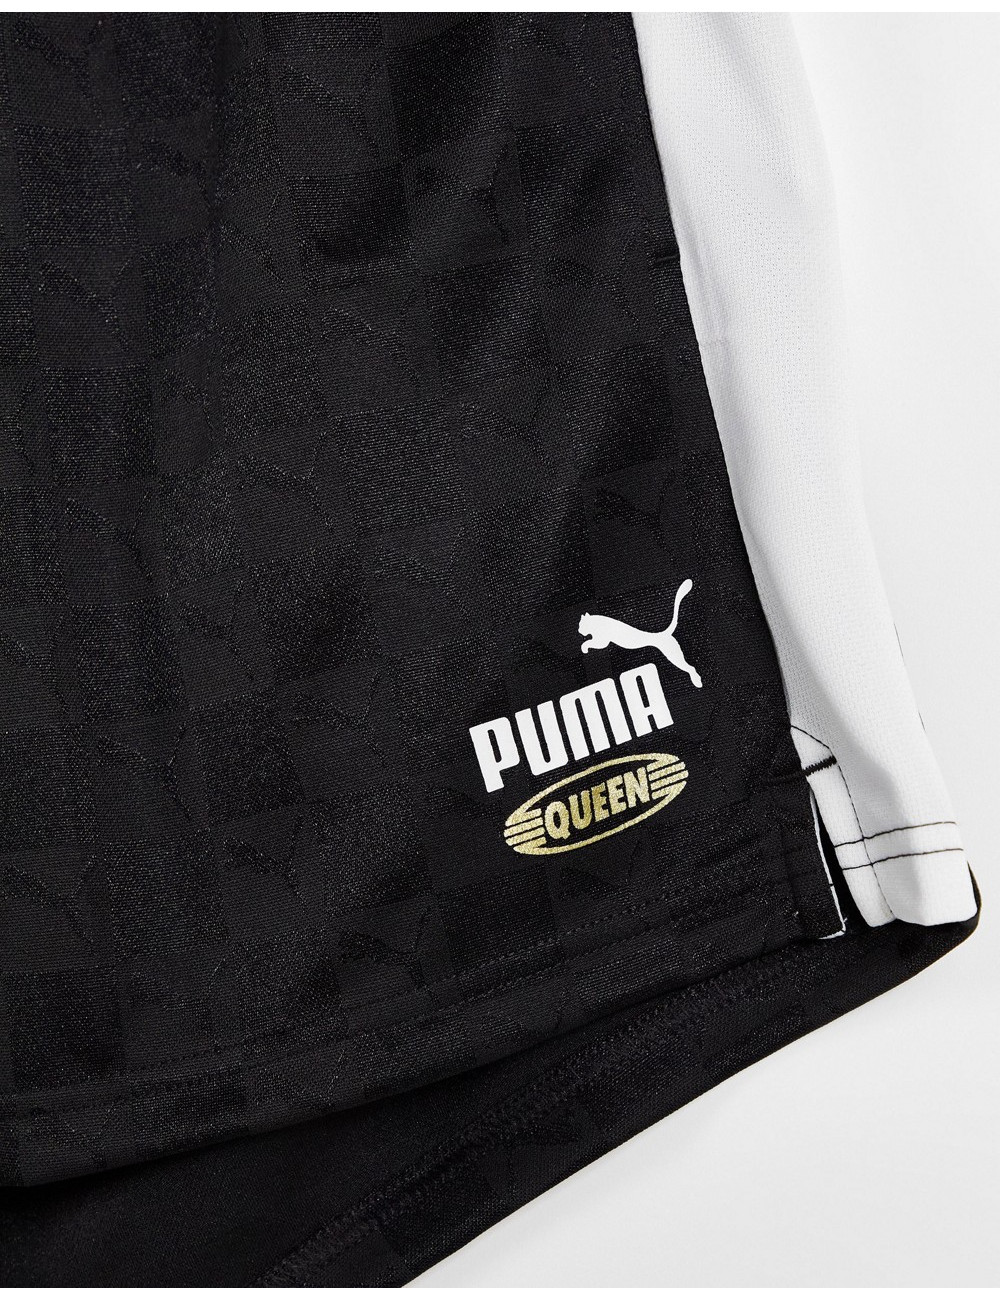 Puma Queen plus repeat logo...